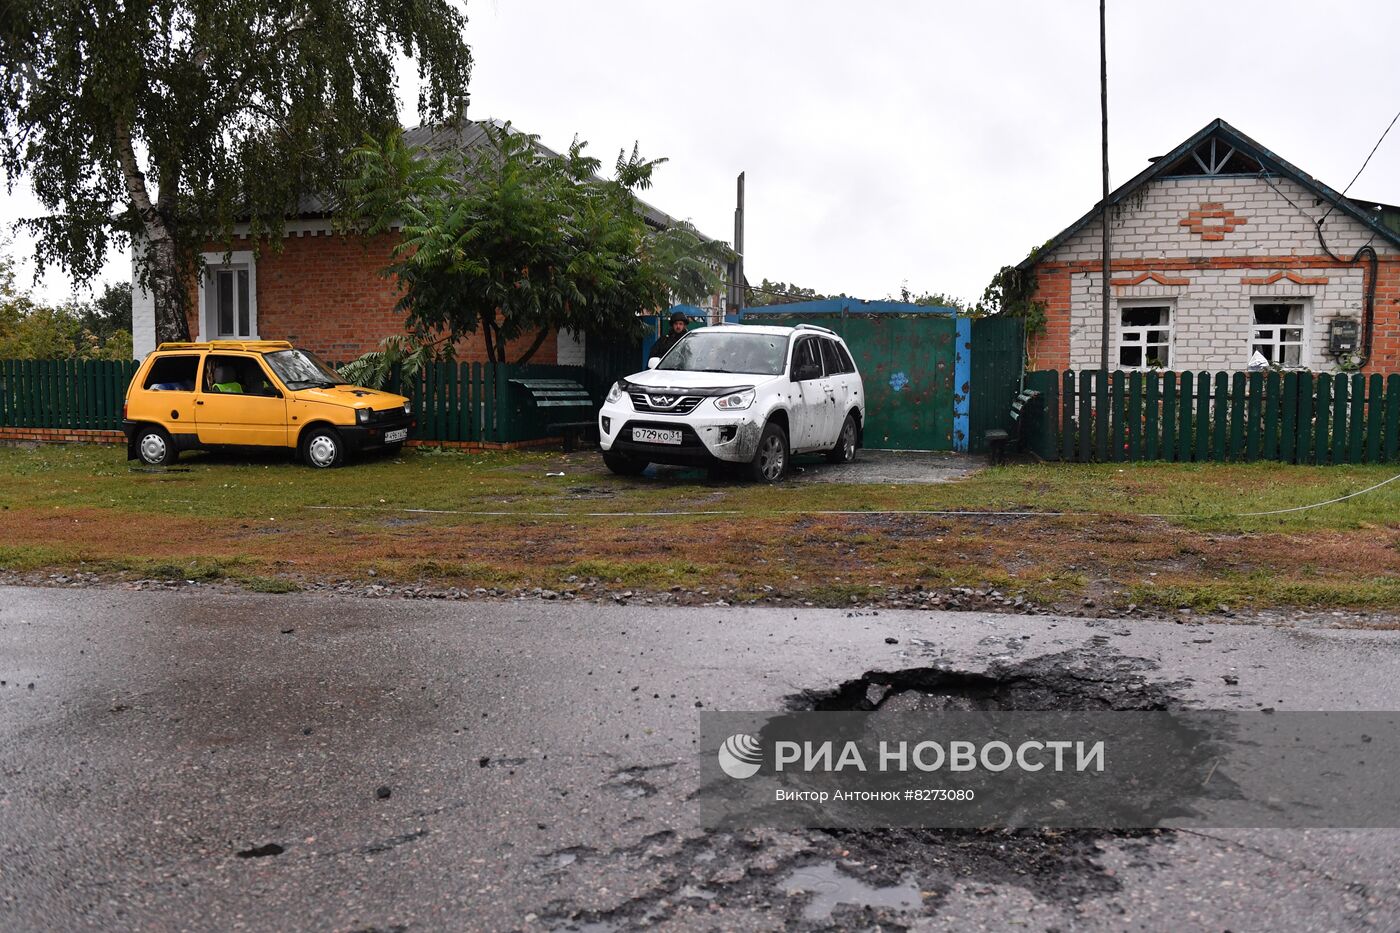 Приграничное белгородское село Логачевка подверглось обстрелу с украинской стороны